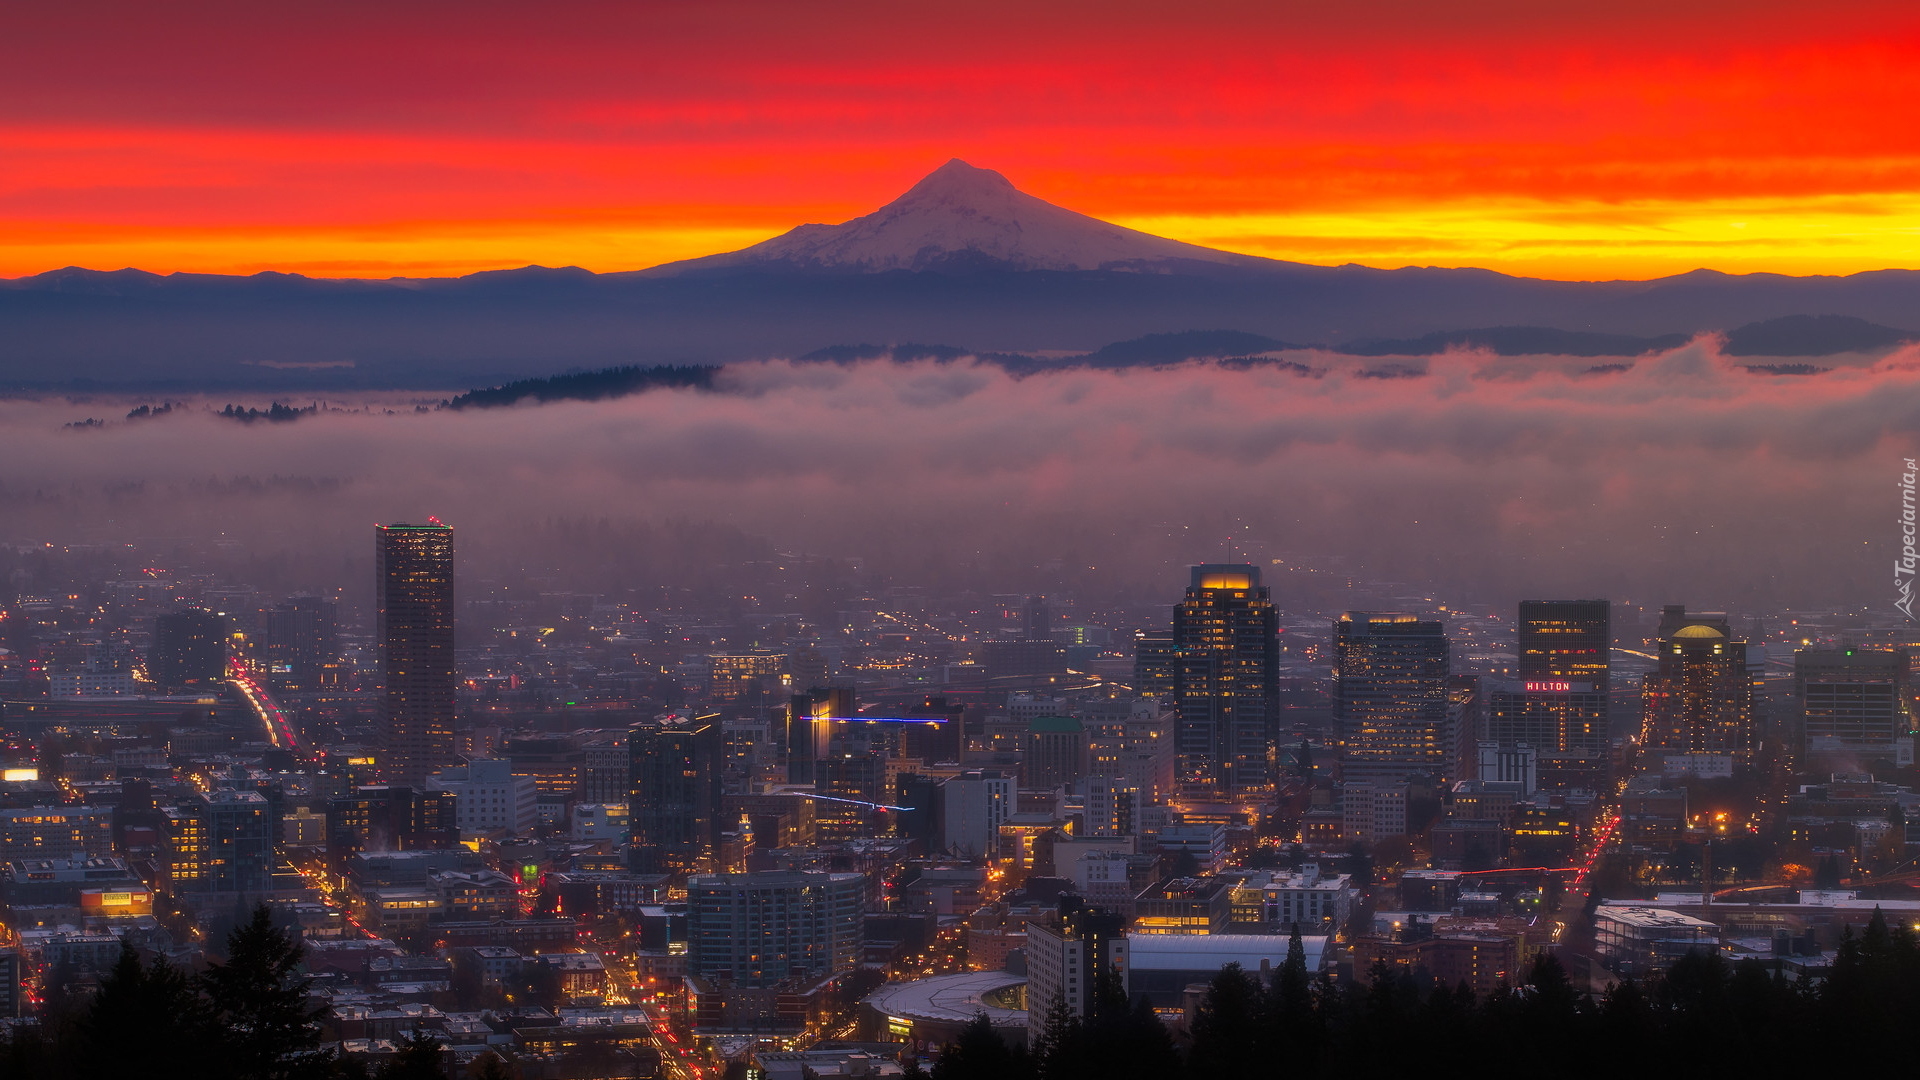 Wschód słońca, Góra, Stratowulkan, Mount Hood, Oświetlone, Miasto, Portland, Stan Oregon, Stany Zjednoczone